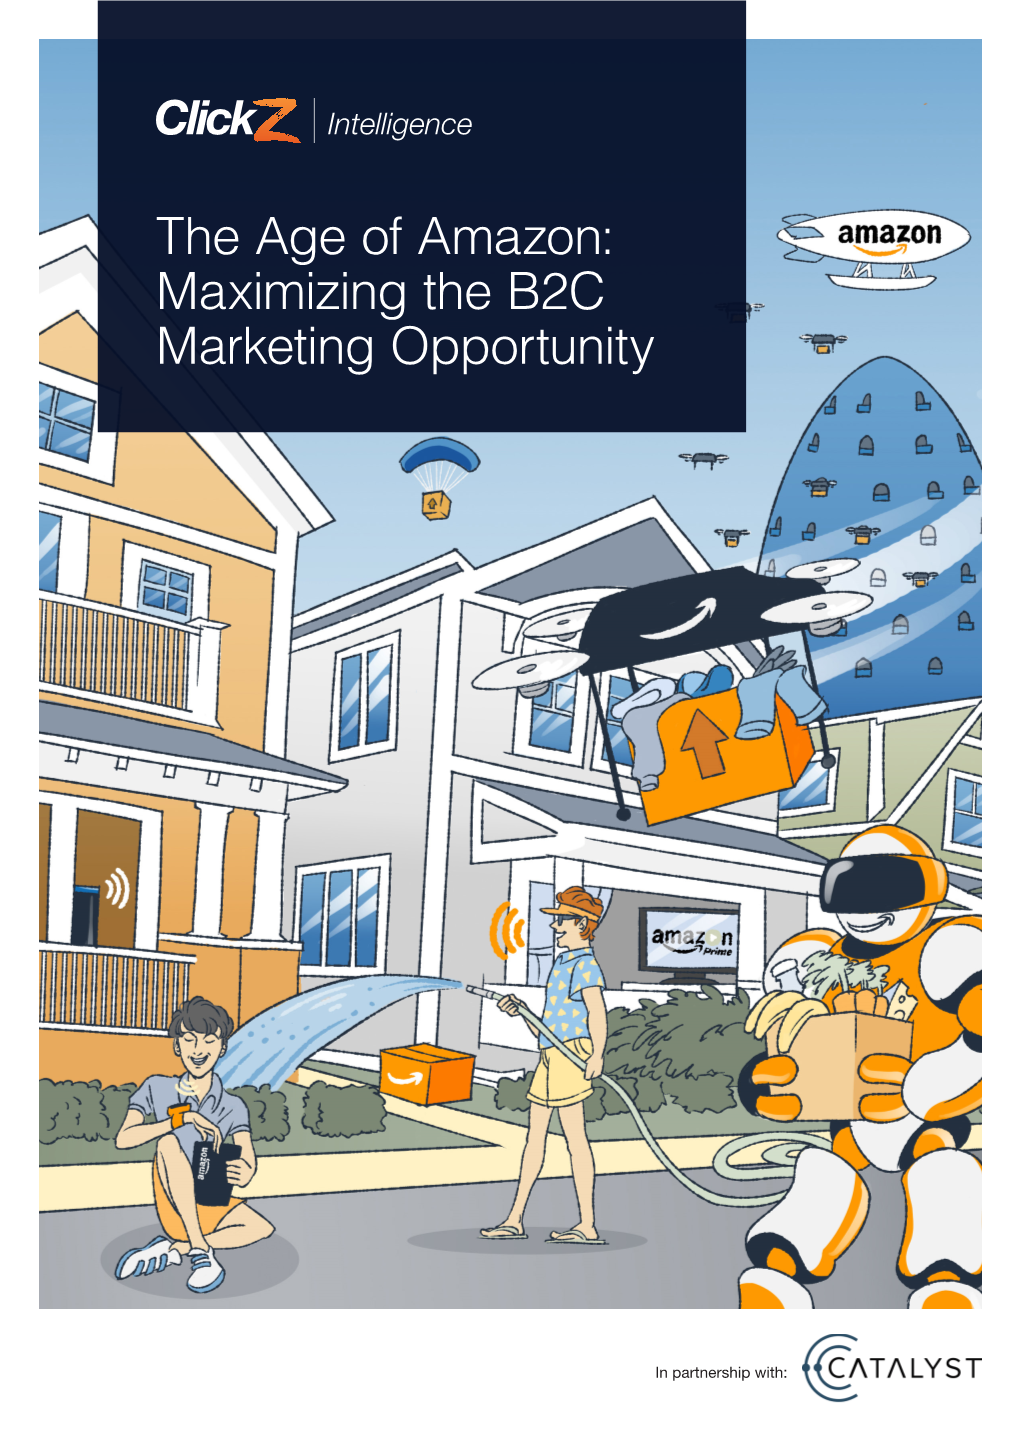 The Age of Amazon: Maximizing the B2C Marketing Opportunity